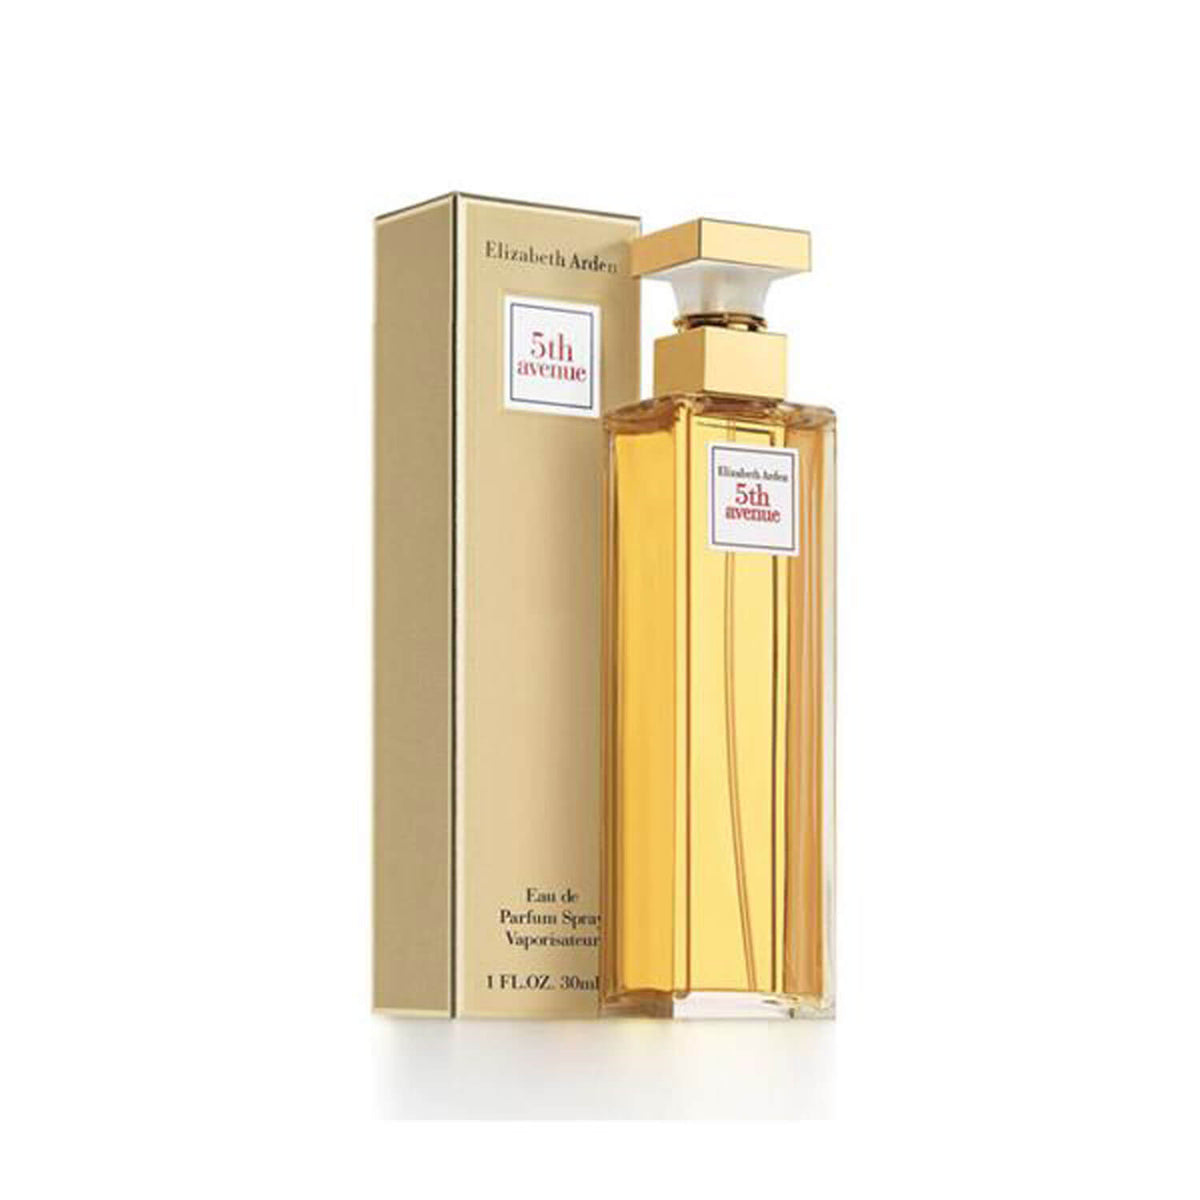 5th Avenue Eau De Parfum 30ml